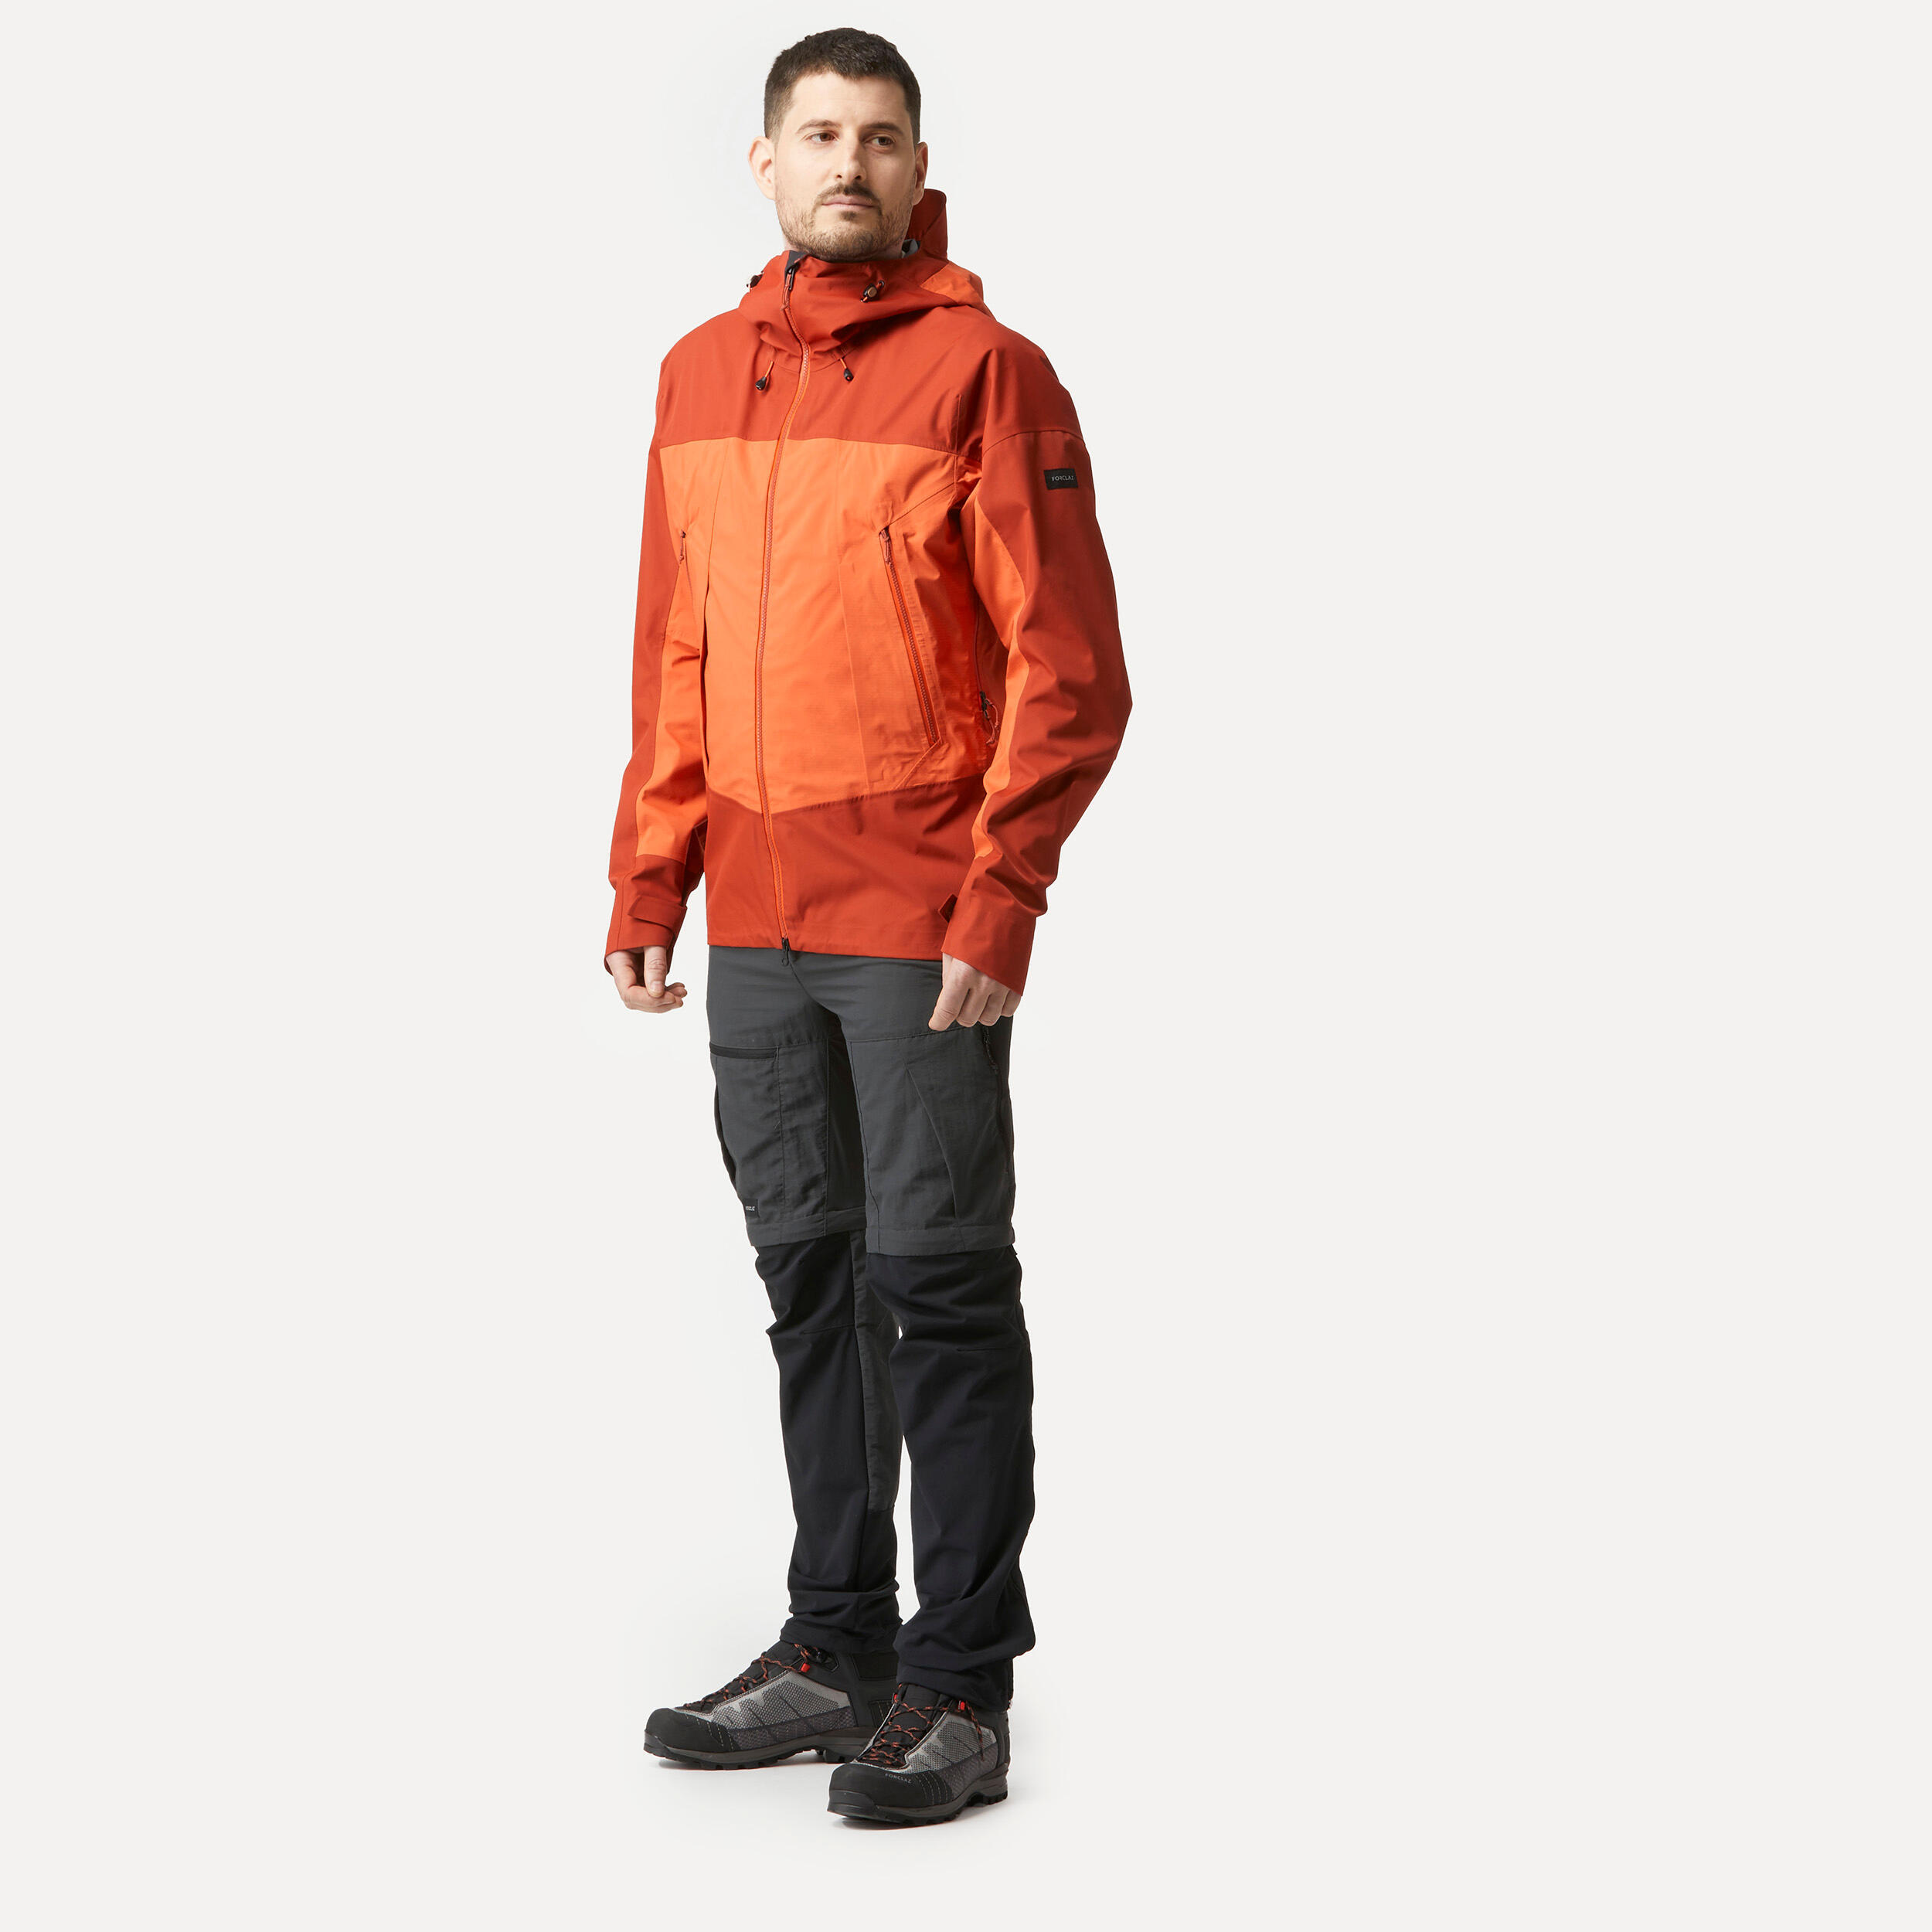 Men’s Waterproof Jacket – 20,000 mm  – taped seams - MT500  4/11